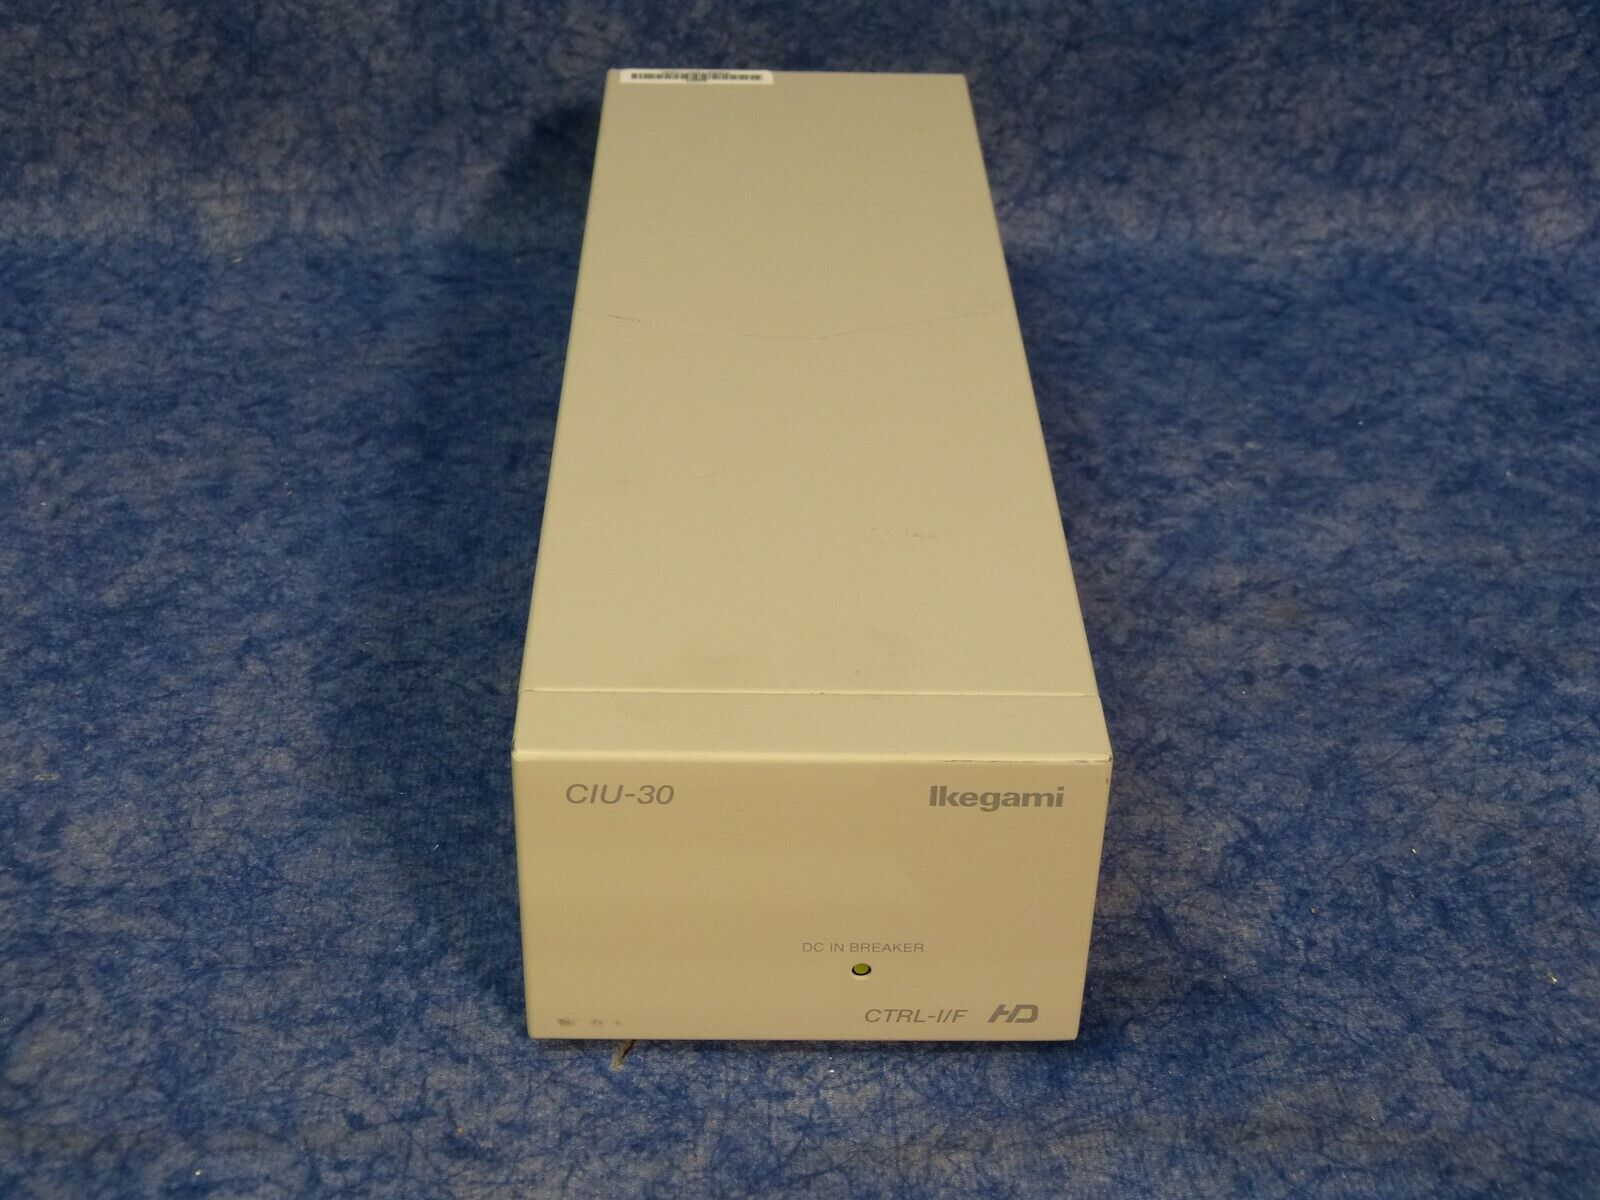 初回限定 Ikegami CIU-30 CTRL-I F Control Interface Unit AC Not うのにもお得な情報満載！ PS